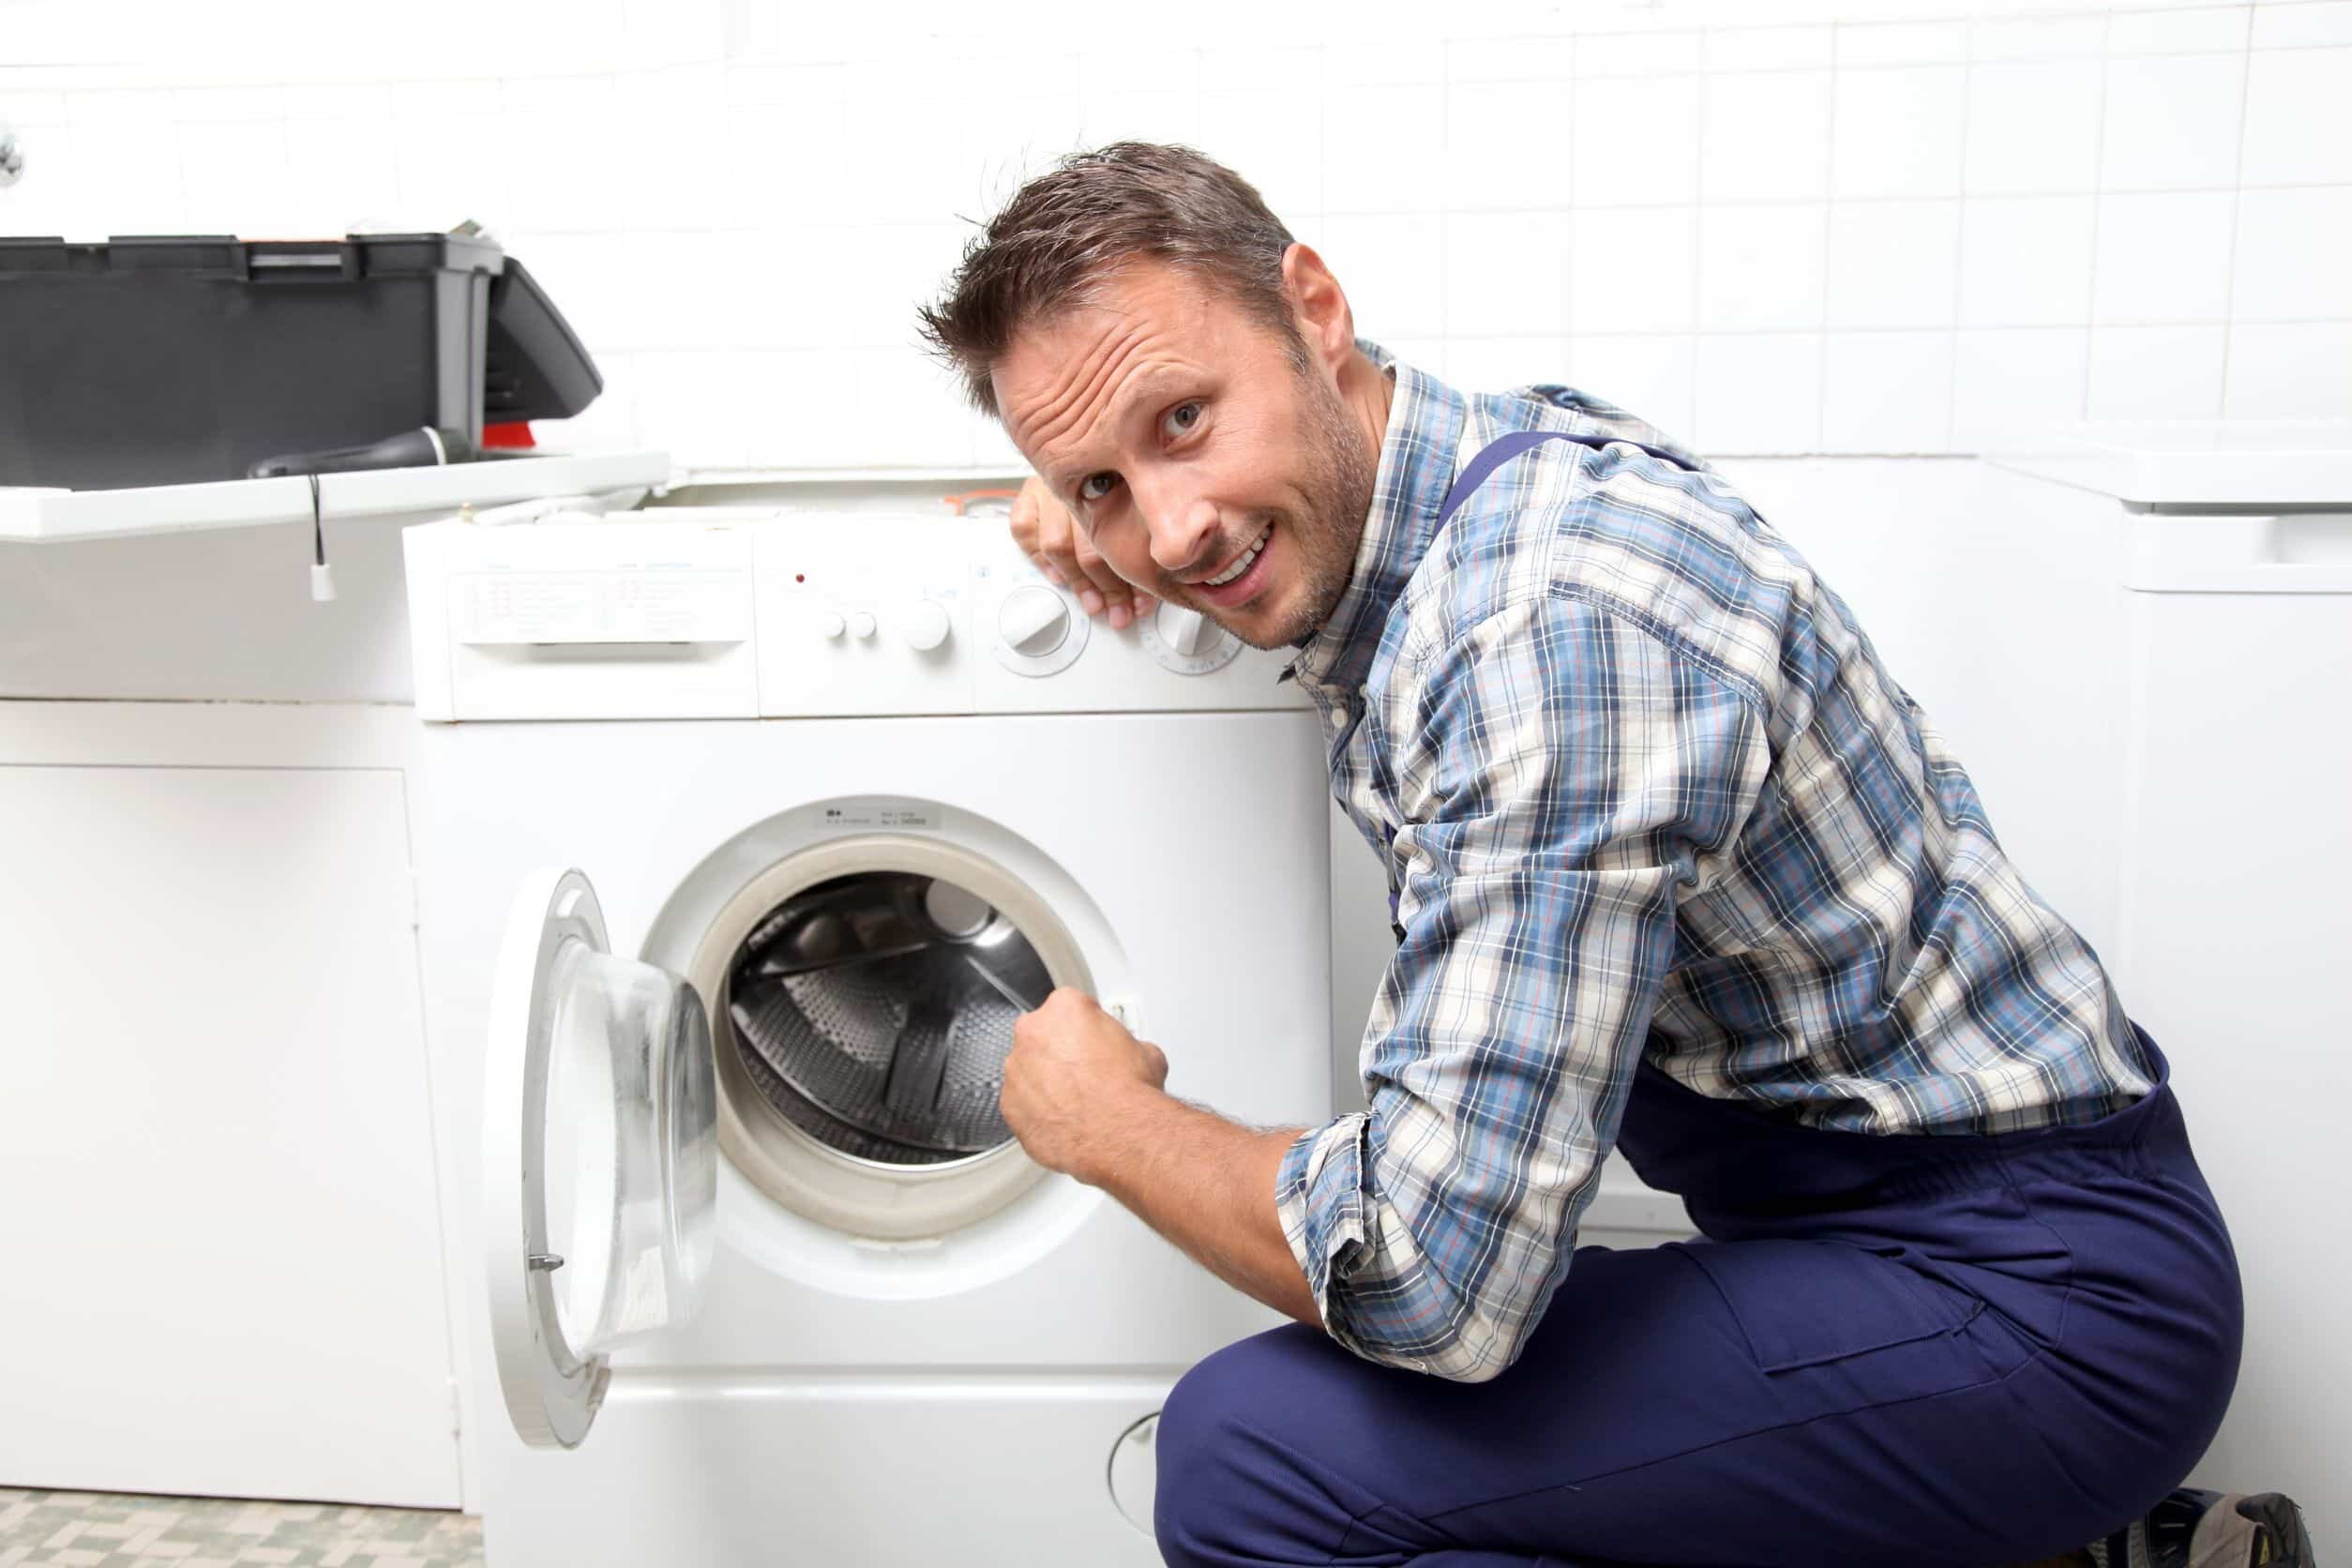 Nếu bạn không rành cấu tạo của máy giặt, hãy gọi đơn vị sửa chữa, bảo hành chuyên nghiệp đến kiểm tra và sửa ngay.